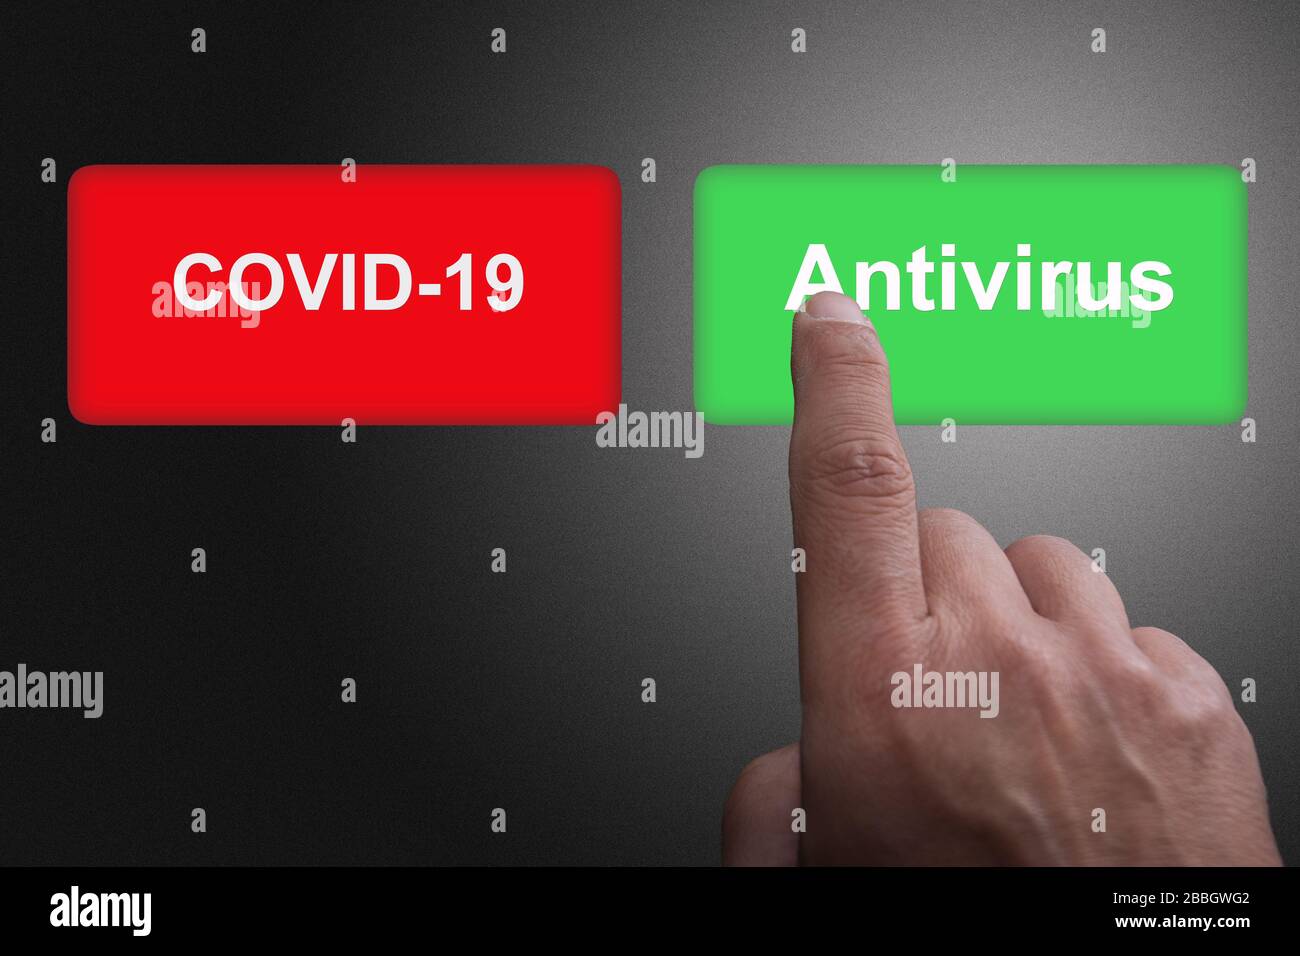 COVID-19 descubrimiento de la vacuna del virus o concepto de éxito de la investigación de anticuerpos, botones rojos y verdes con Covid-19 y texto antivirus Foto de stock